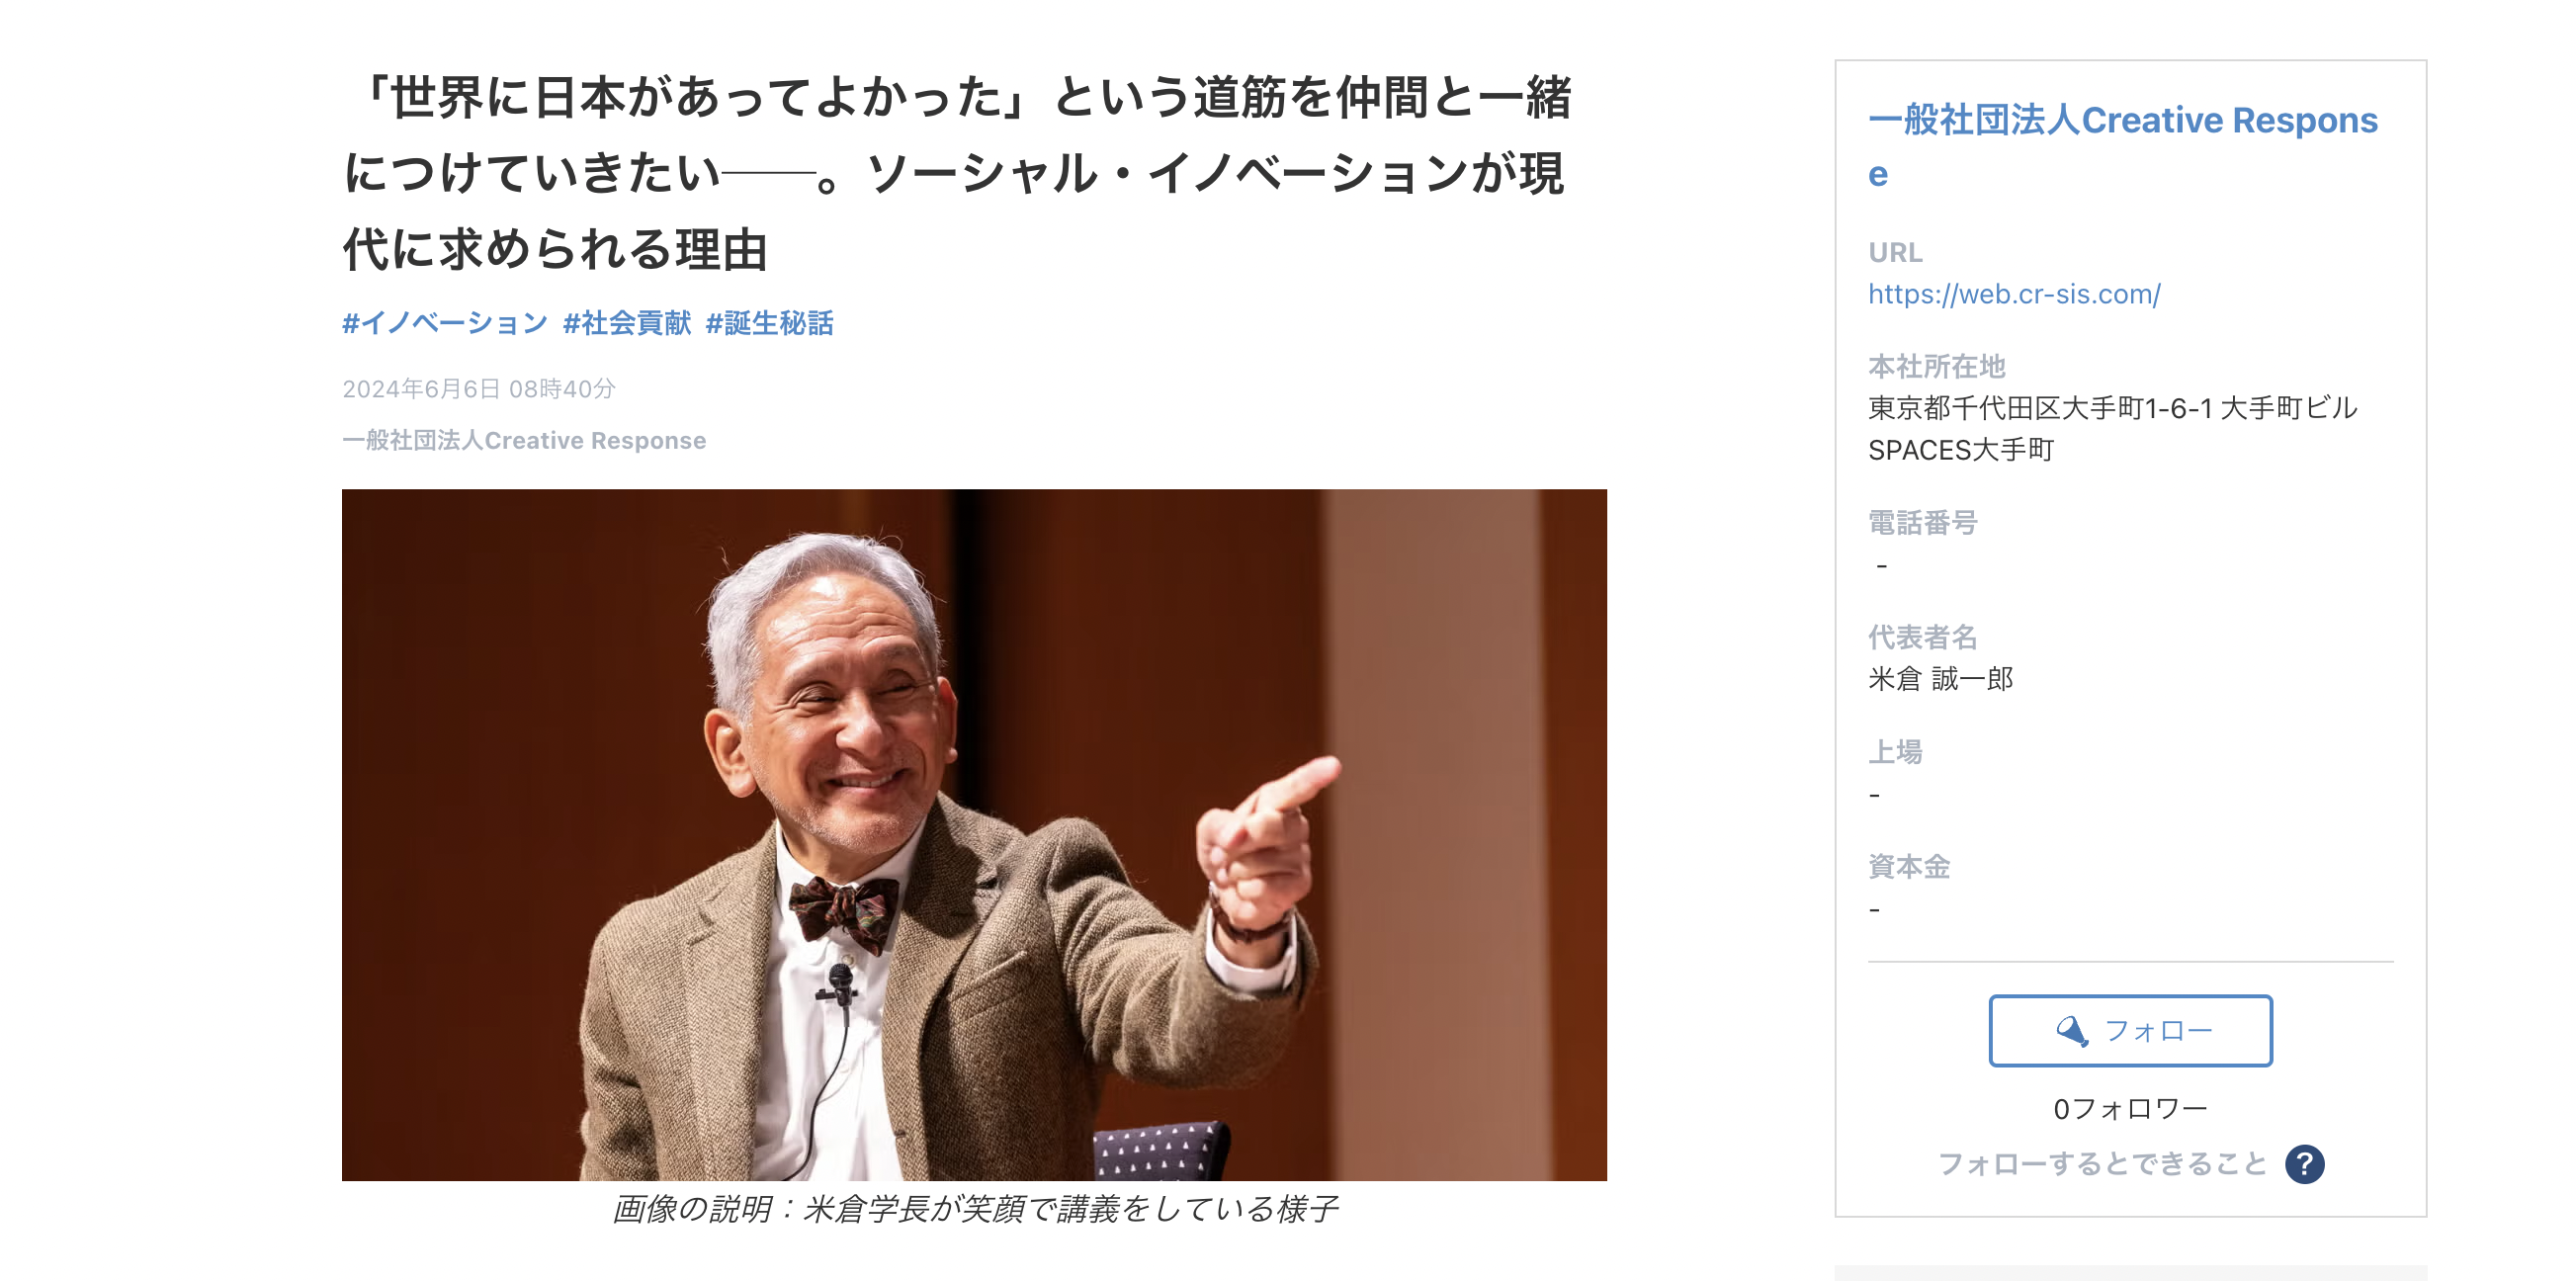 インタビュー記事見出し部分をスクリーンショットした画像。「世界に日本があってよかった」という道筋を仲間と一緒につけていきたい。ソーシャル・イノベーションが現代に求められる理由というタイトルと笑顔で講義をする米倉学長写真